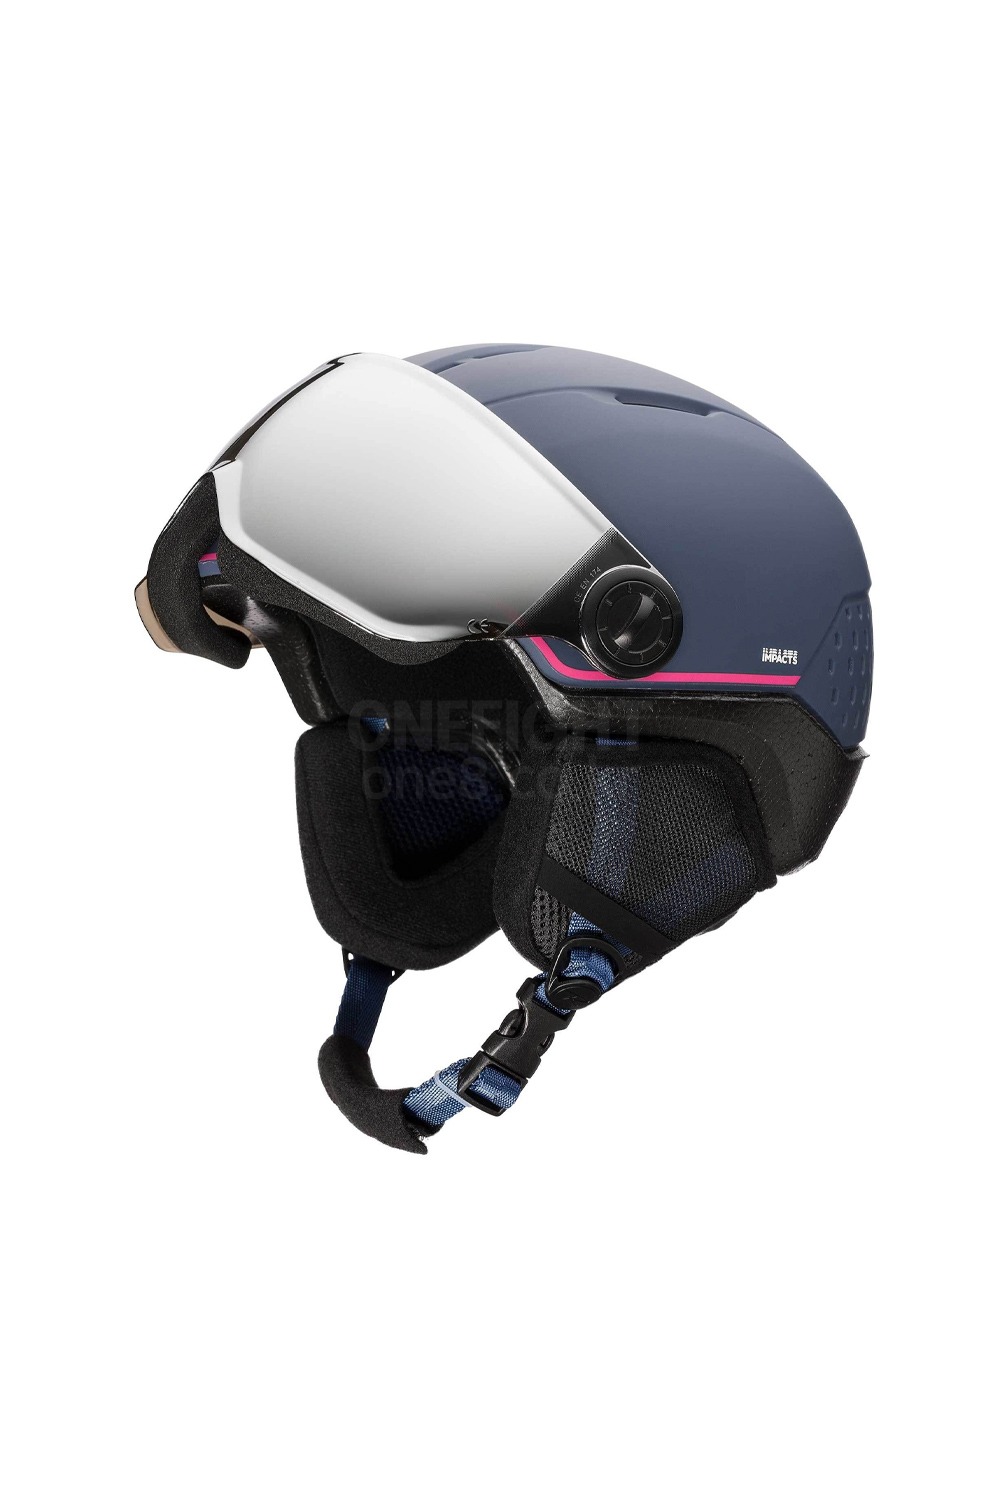 로시놀 스키/스노우 바이저 헬멧 우피 임팩트 2021 ROSSIGNOL WHOOPEE VISOR IMPACTS_BLUE/PINK_키즈/주니어_DFRS005BP